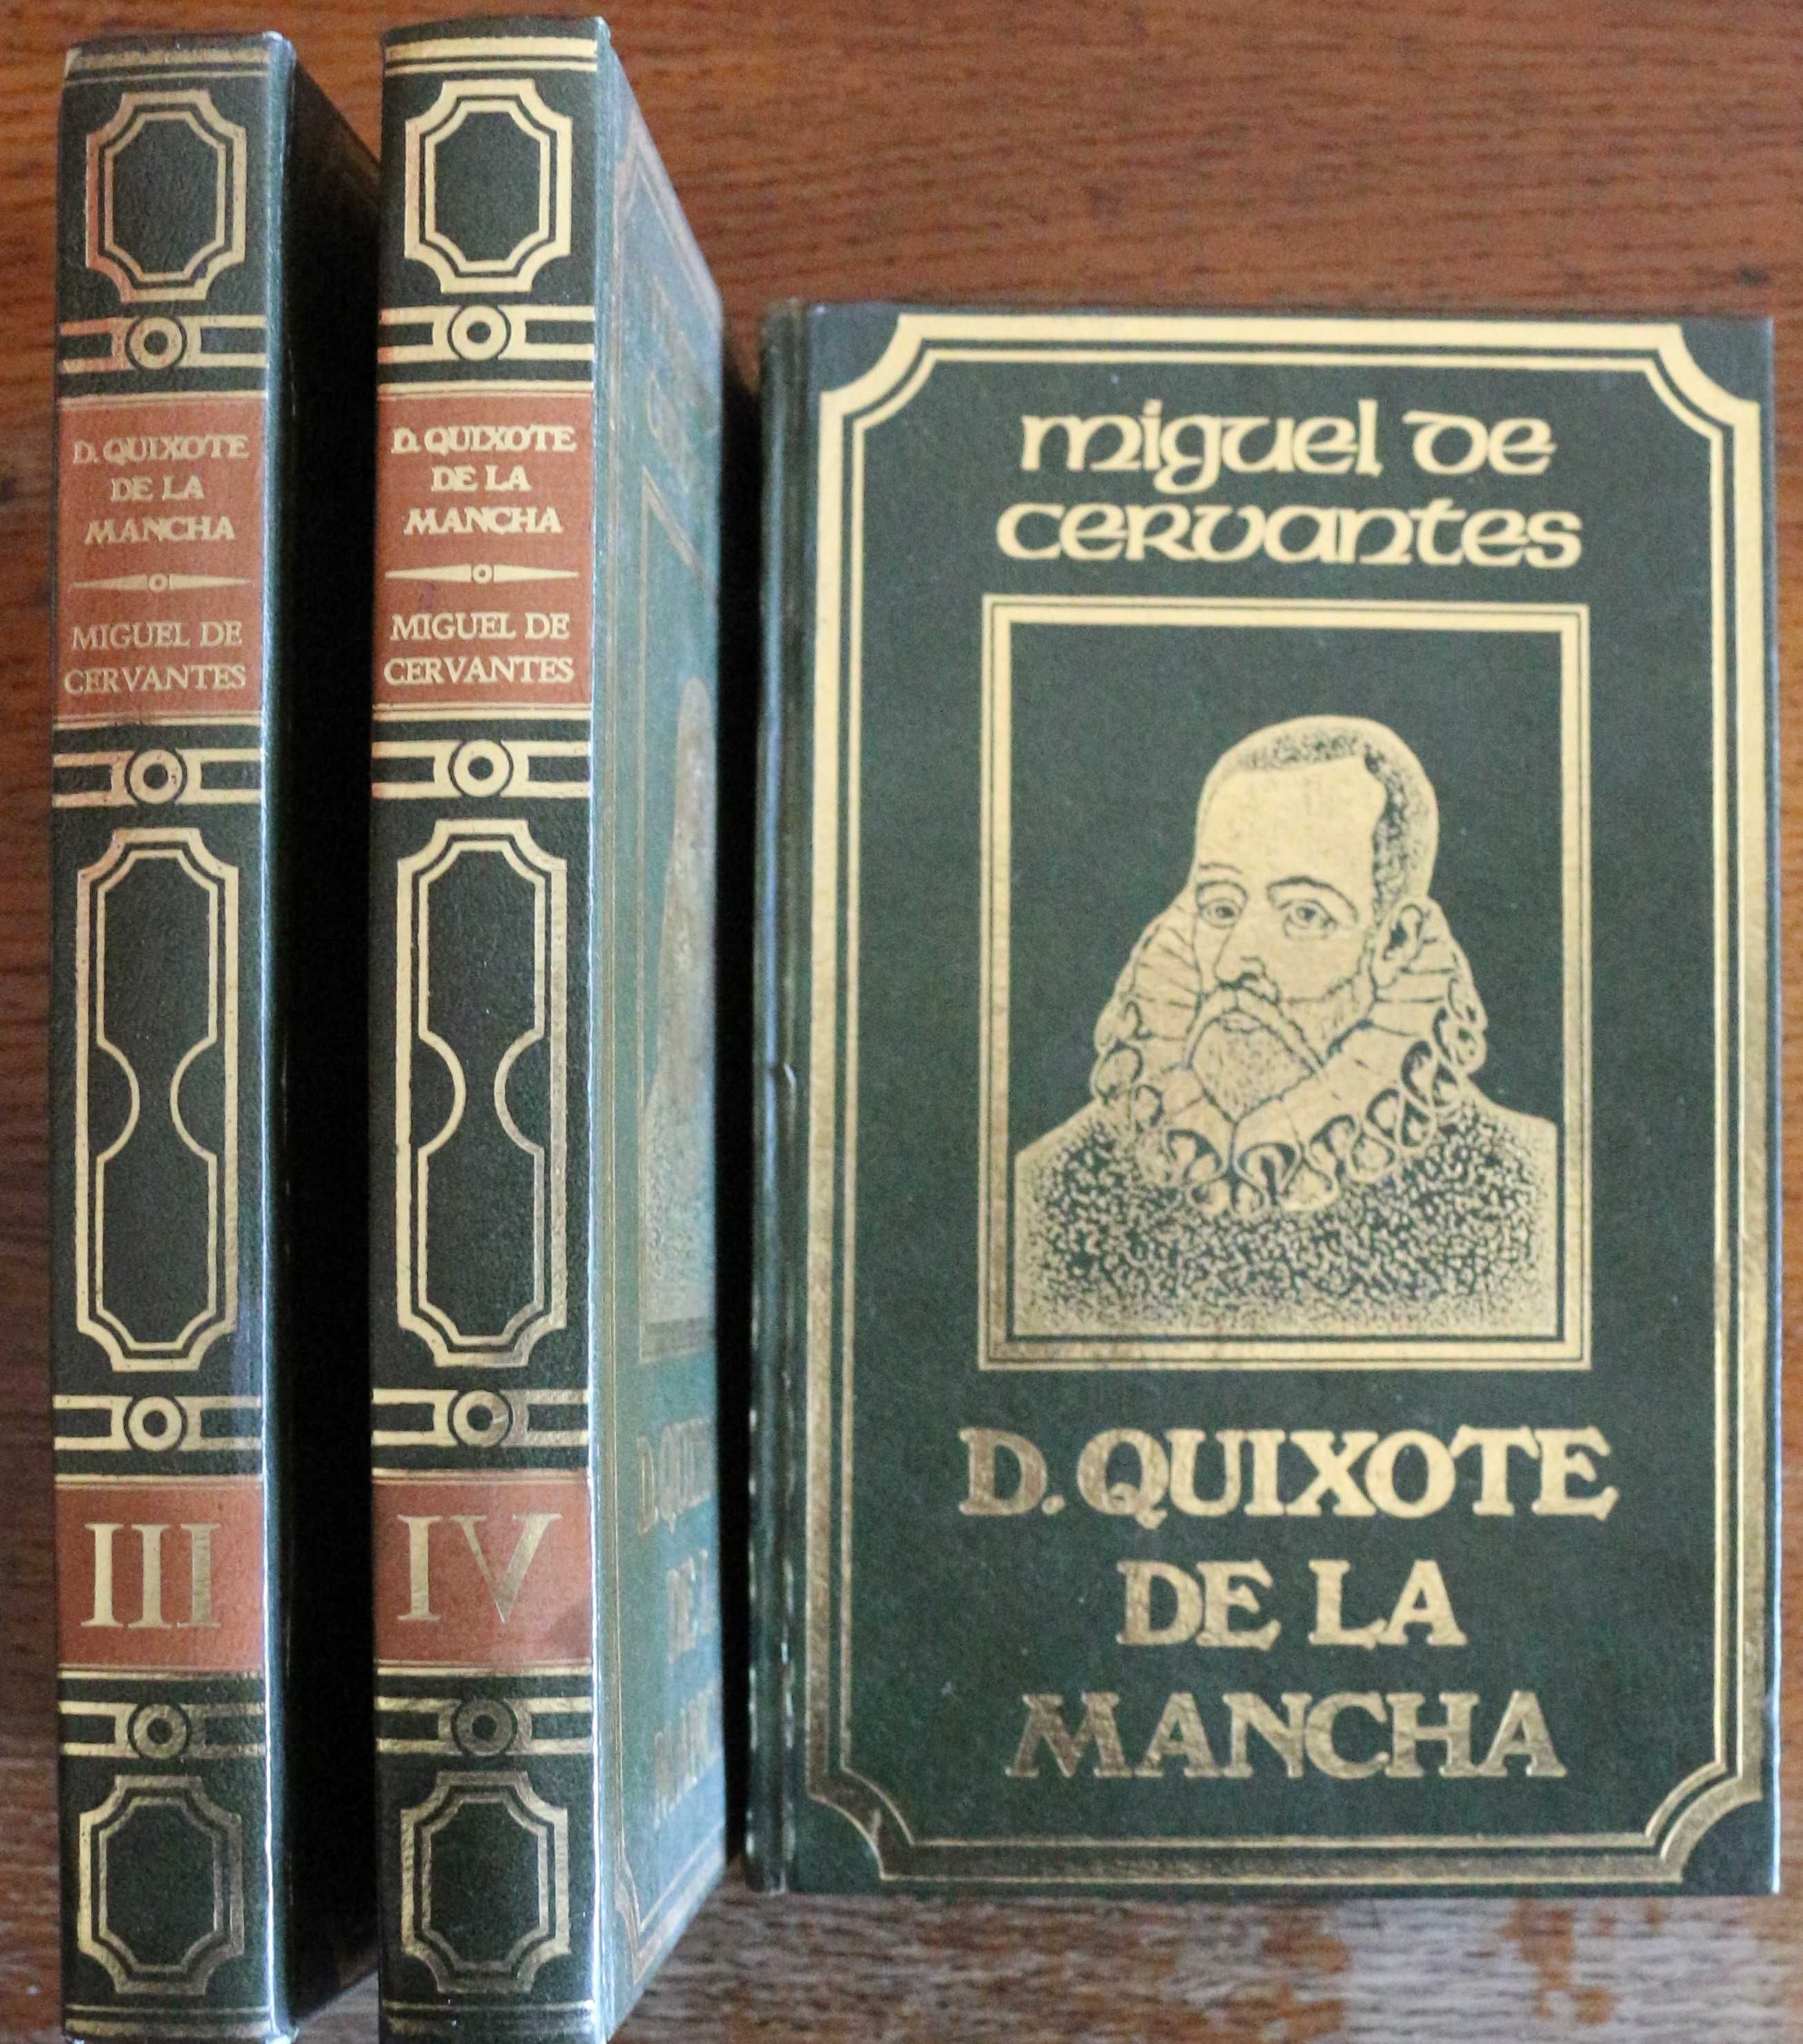 Miguel de Cervantes «D. Quixote de la Mancha»